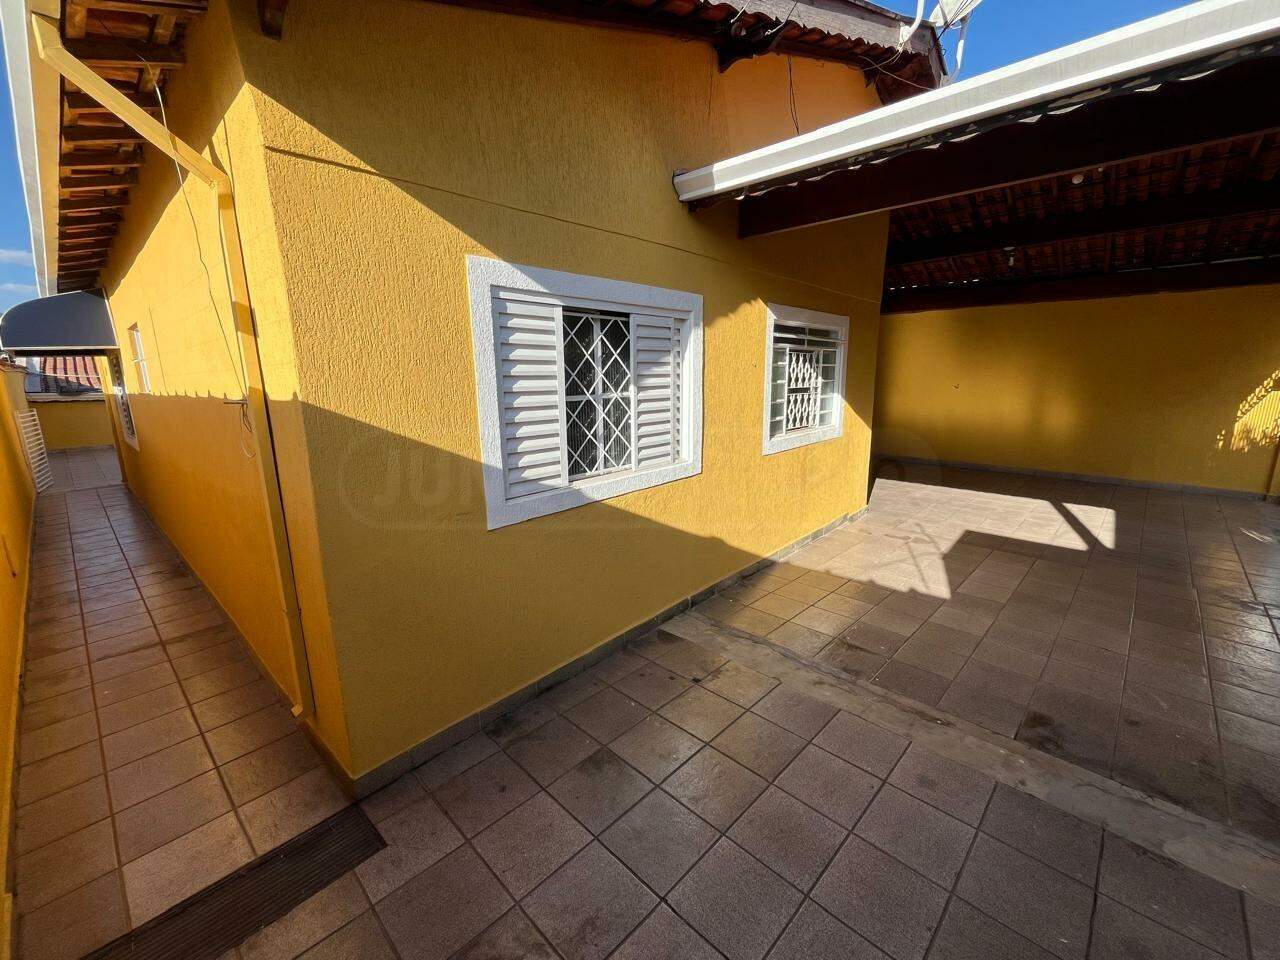 Casa para alugar, 4 quartos, 2 vagas, no bairro Santa Terezinha em Piracicaba - SP